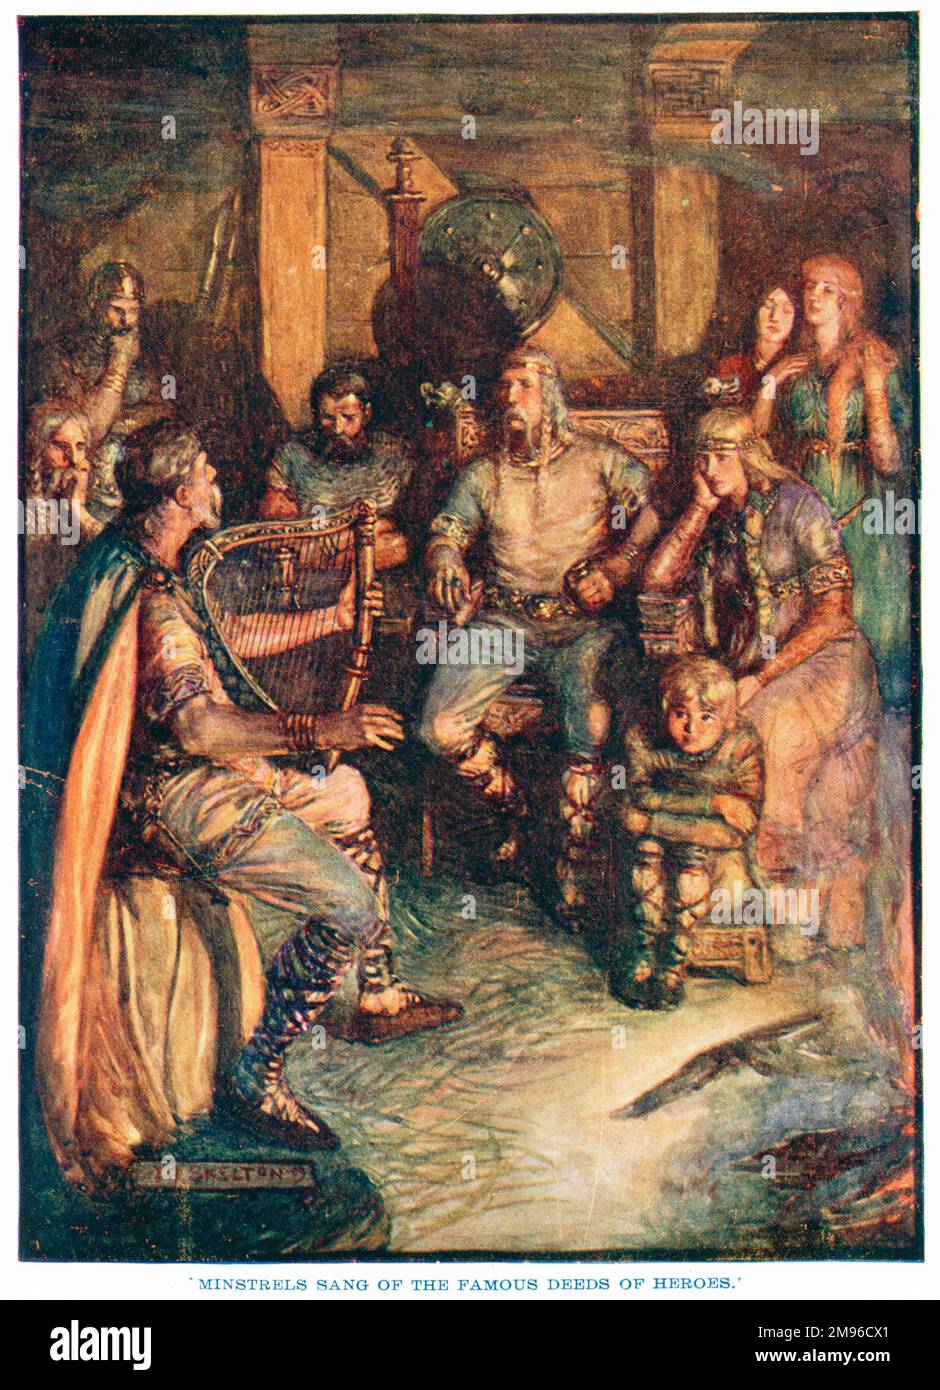 "I minstells cantavano delle famose gesta degli eroi". Un minstrel medievale con un'arpa celtica canta storie ad un pubblico rapito di uomini, donne e bambini. Foto Stock